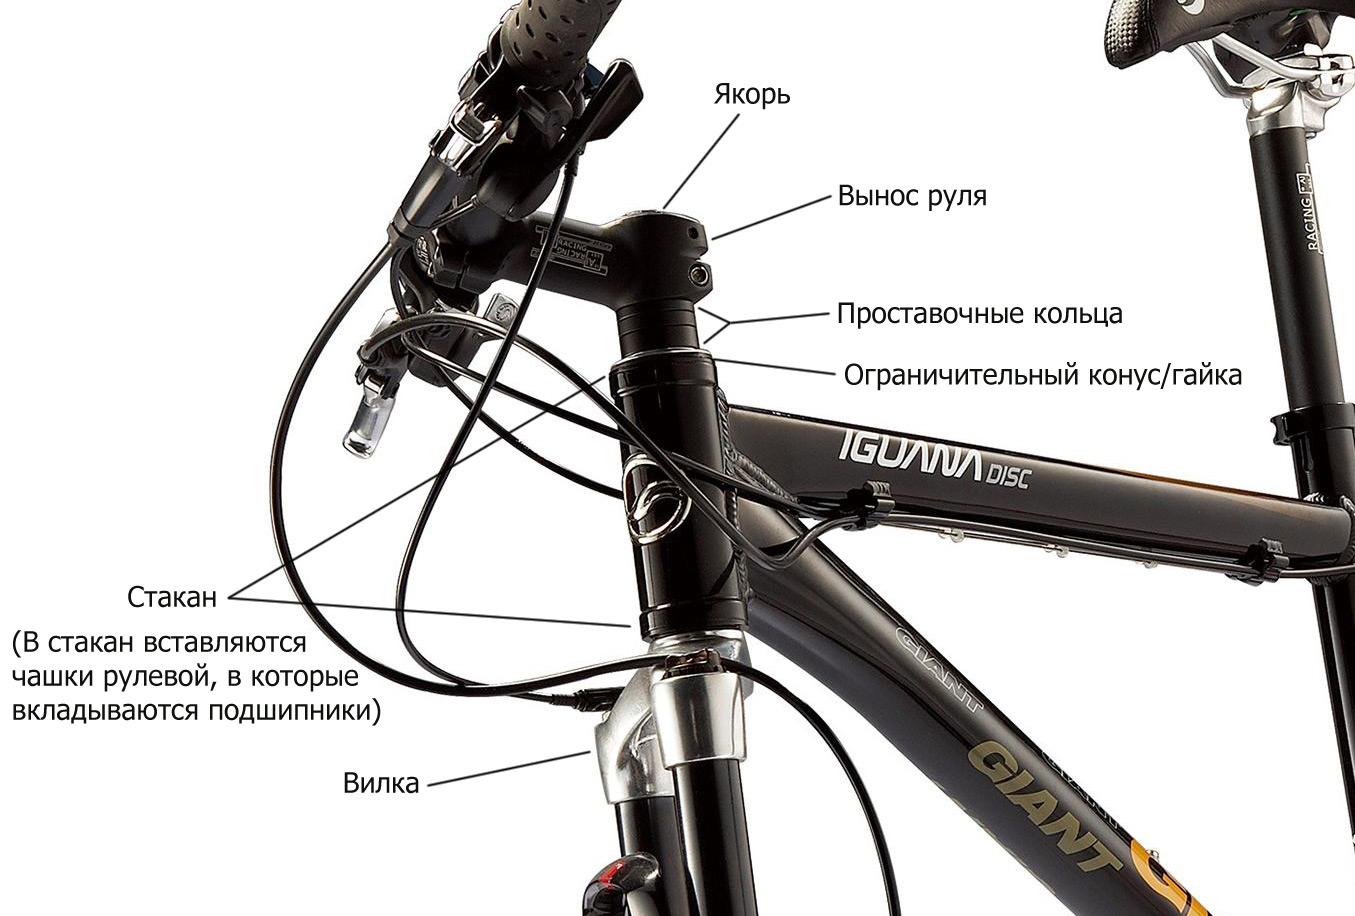 Как называются ручки на велосипеде. Конструкция рулевой колонки велосипеда стелс 950md. Рулевая колонка велосипеда стелс. Рулевая колонка велосипеда Стингер. Рулевая колонка велосипеда Cube.